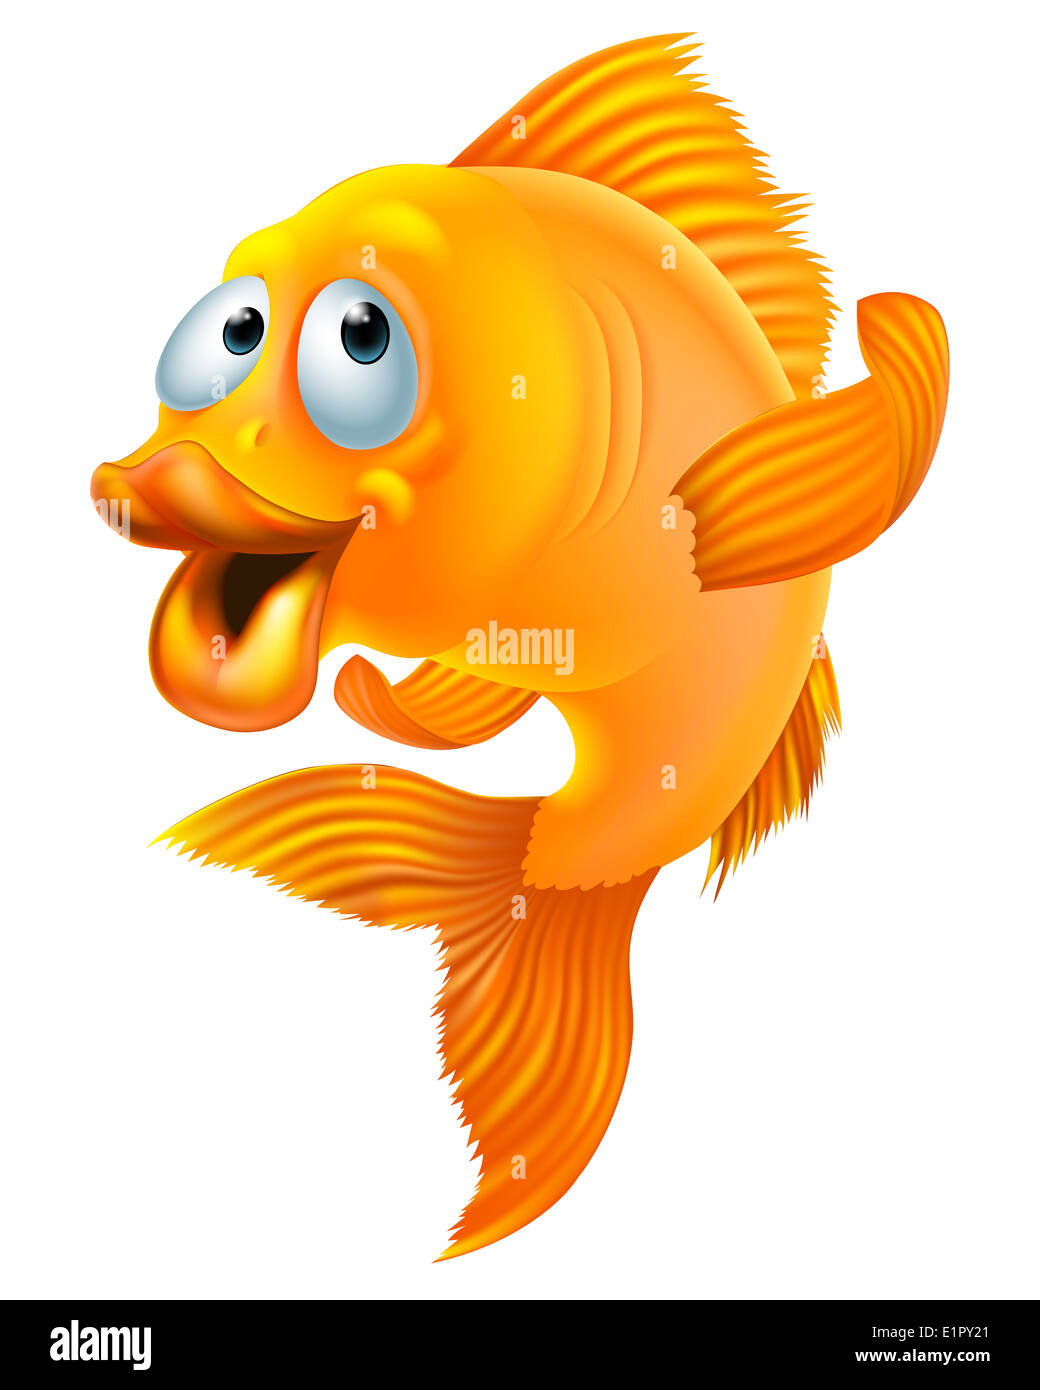 Une illustration d'un poisson rouge heureux personnage waving Banque D'Images